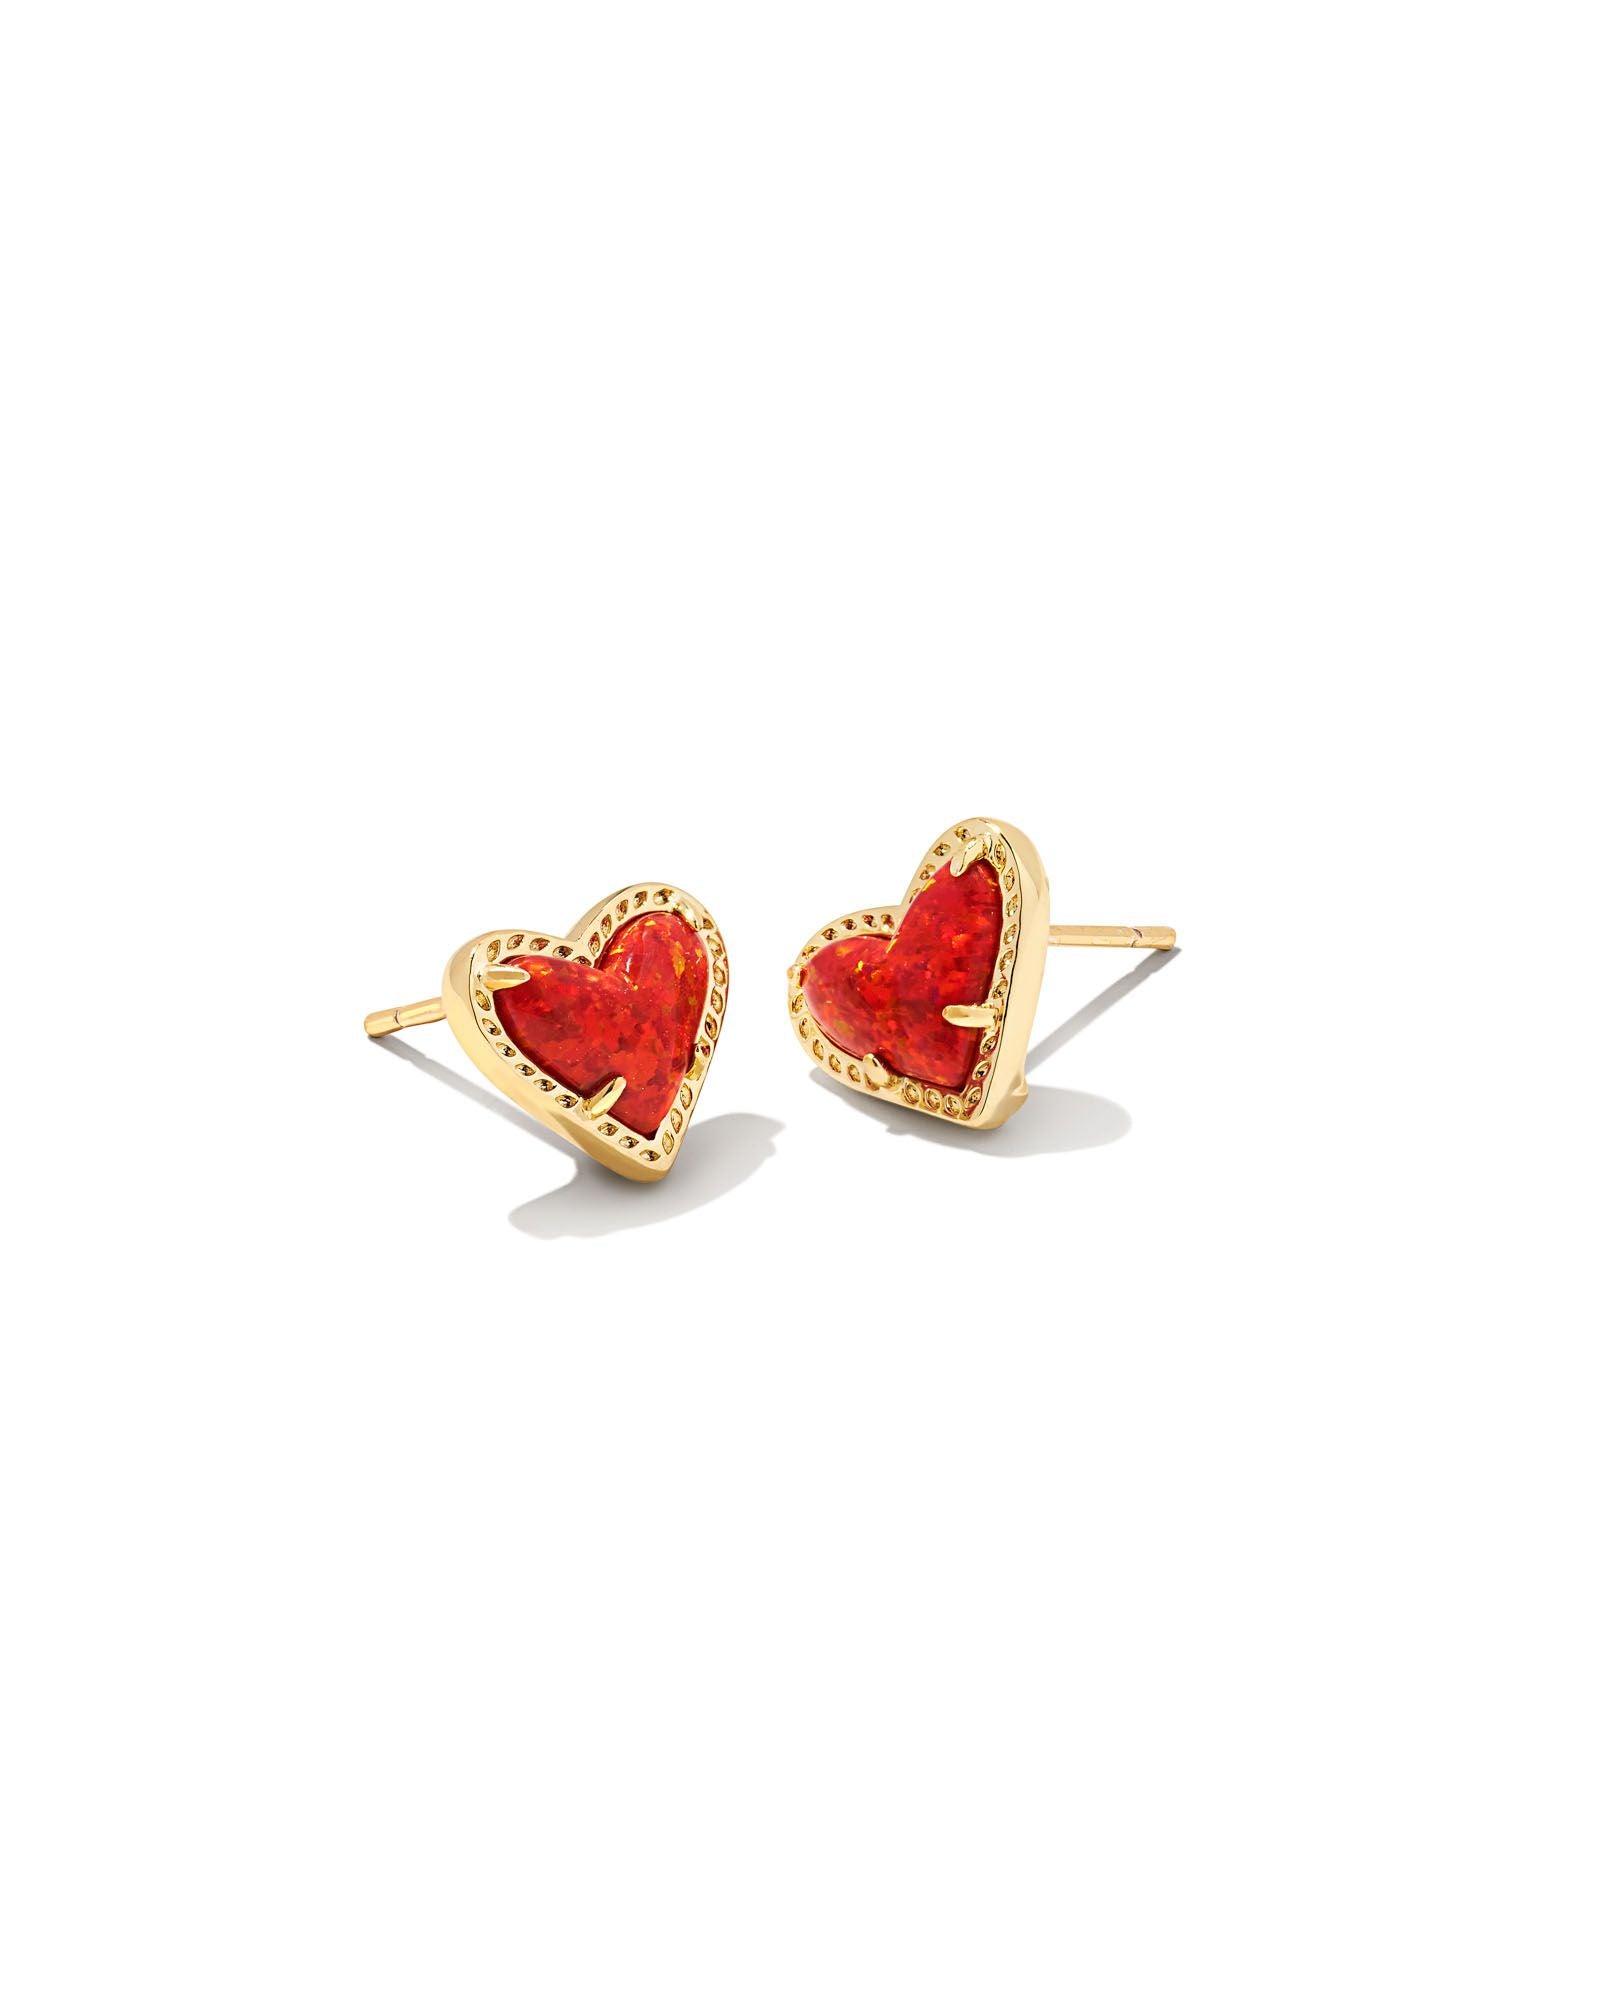 Ari Heart Gold Stud Earrings-Red Kyocera Opal - Brazos Avenue Market 